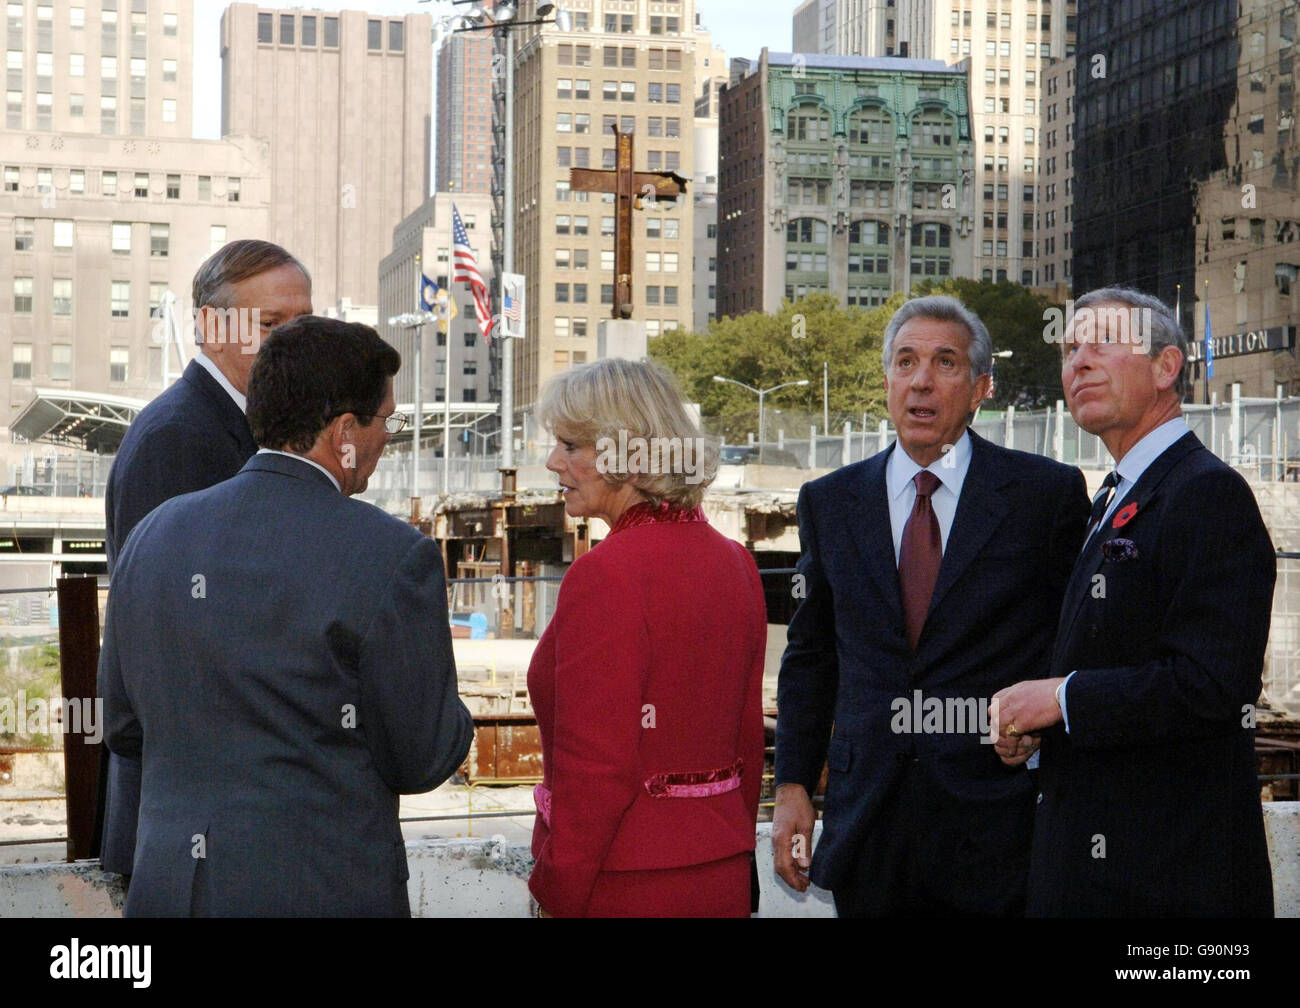 La duchesse de Cornouailles et le Prince de Galles lors d'une visite à Ground Zero, le site du World Trade Centre à New York, le mardi 1er novembre 2005. Charles et Camilla ont touché le dos aux États-Unis à l'heure du déjeuner et ont été chutés directement à Ground Zero pour rendre hommage aux victimes du 11 septembre 2001. Ni l'un ni l'autre n'avait visité la ville depuis la tragédie. Voir PA Story ROYAL Charles. APPUYEZ SUR ASSOCIATION photo. Le crédit photo devrait se lire comme suit : Arthur Edwards/PA/Pool/The Sun Banque D'Images